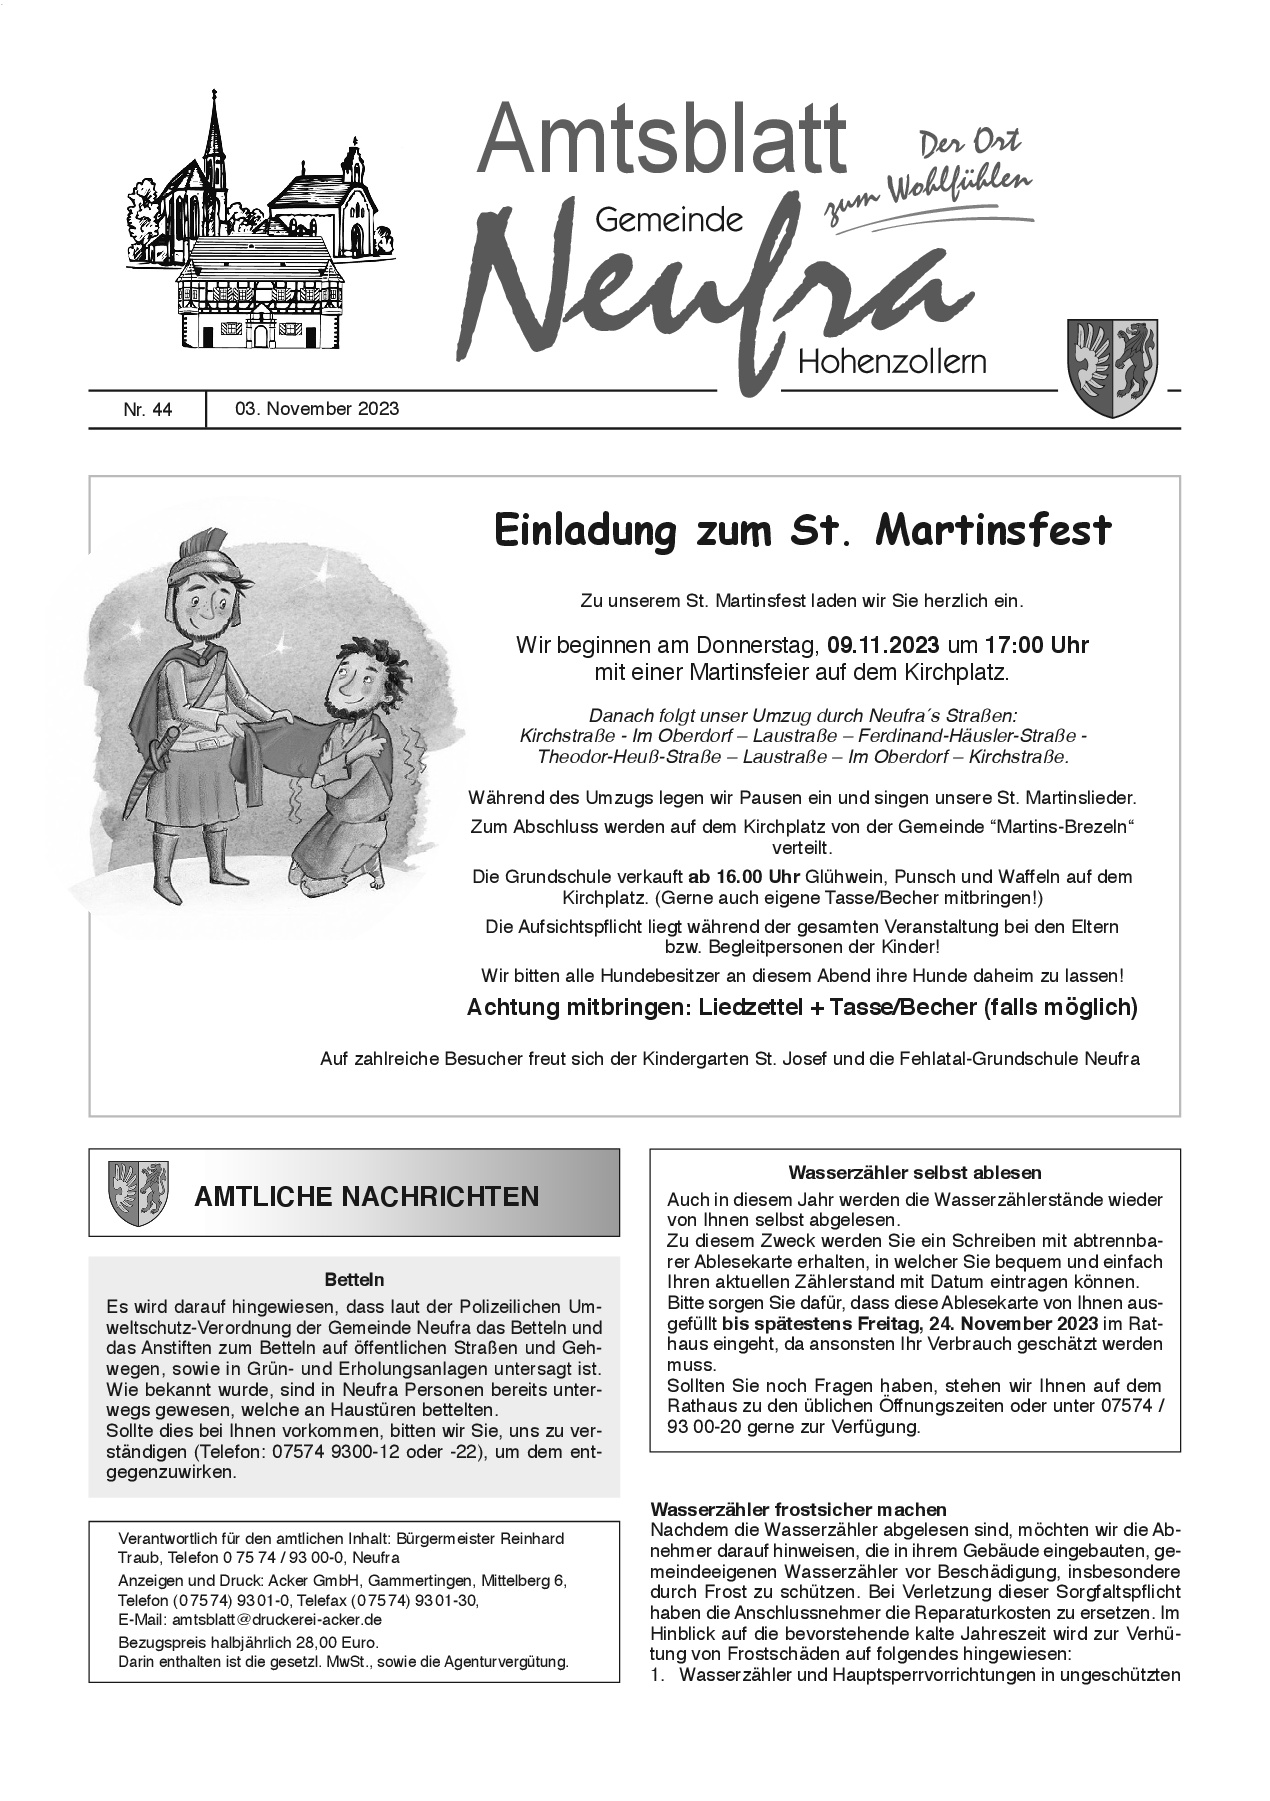  Das Bild zeigt die Titelseite des Amtsblatts Nummer 44 vom 3. November 2023 